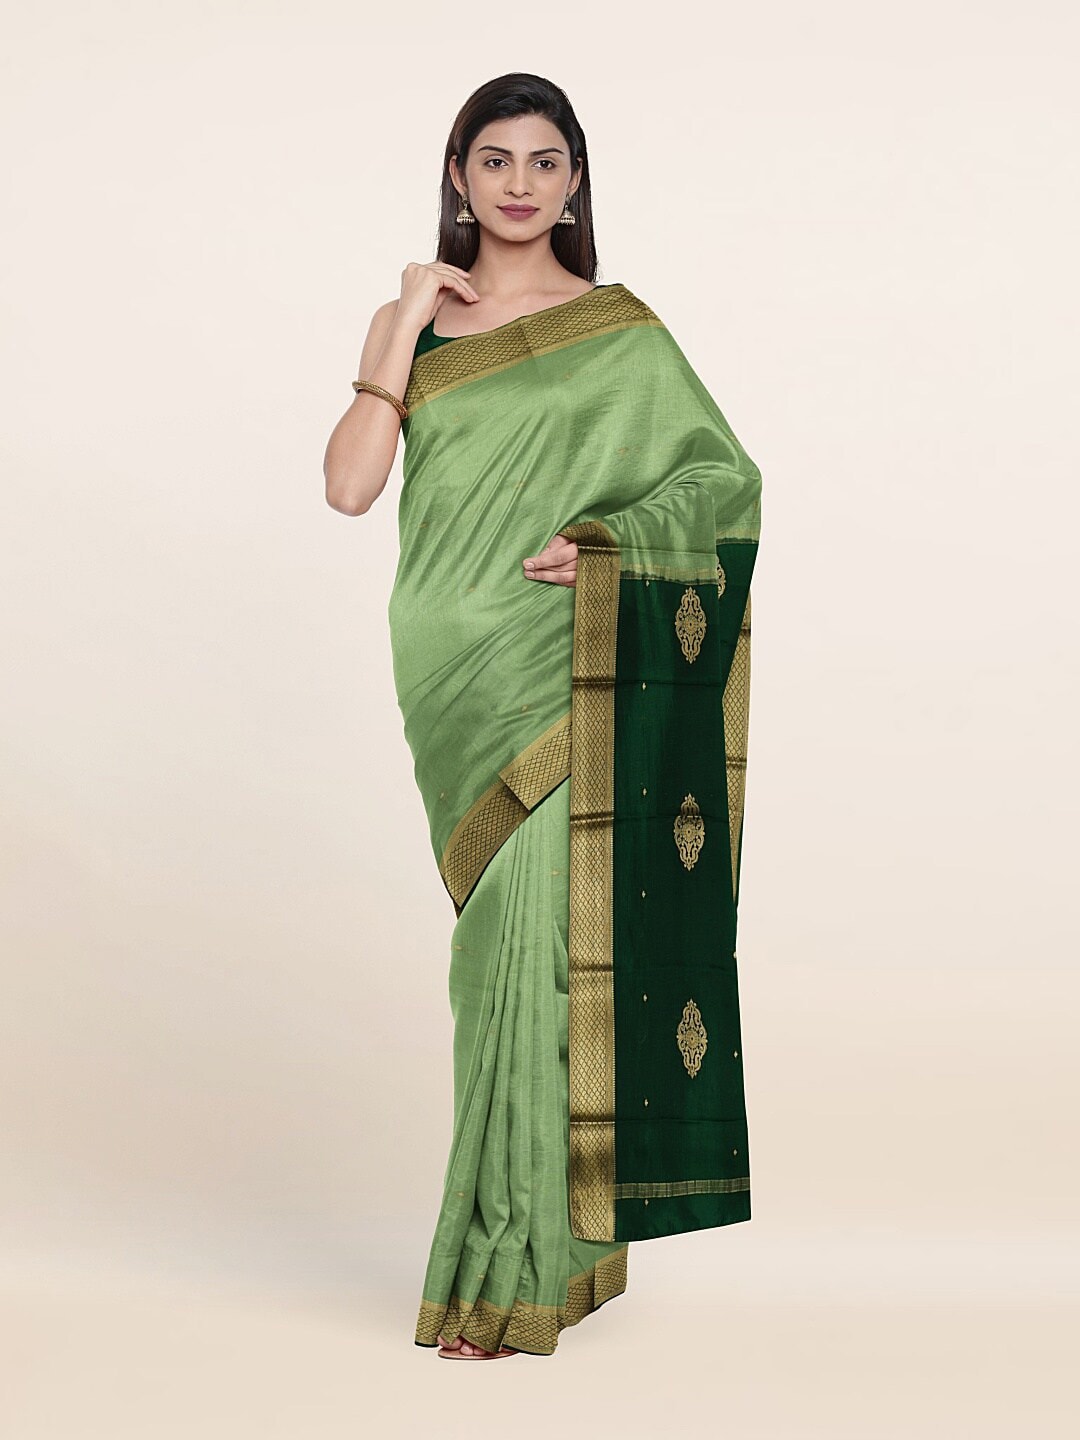 Pothys Green & Gold-Toned Woven Design Zari Pure Silk Saree Price in India